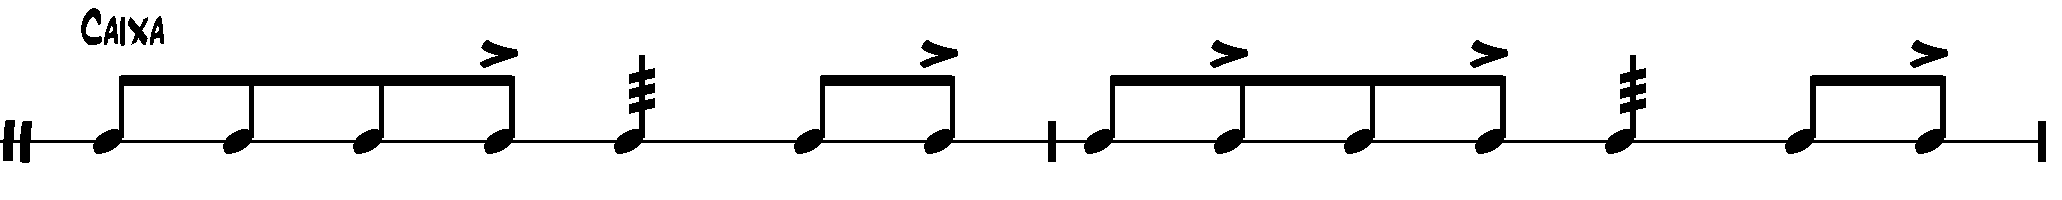 samba notation - caixa